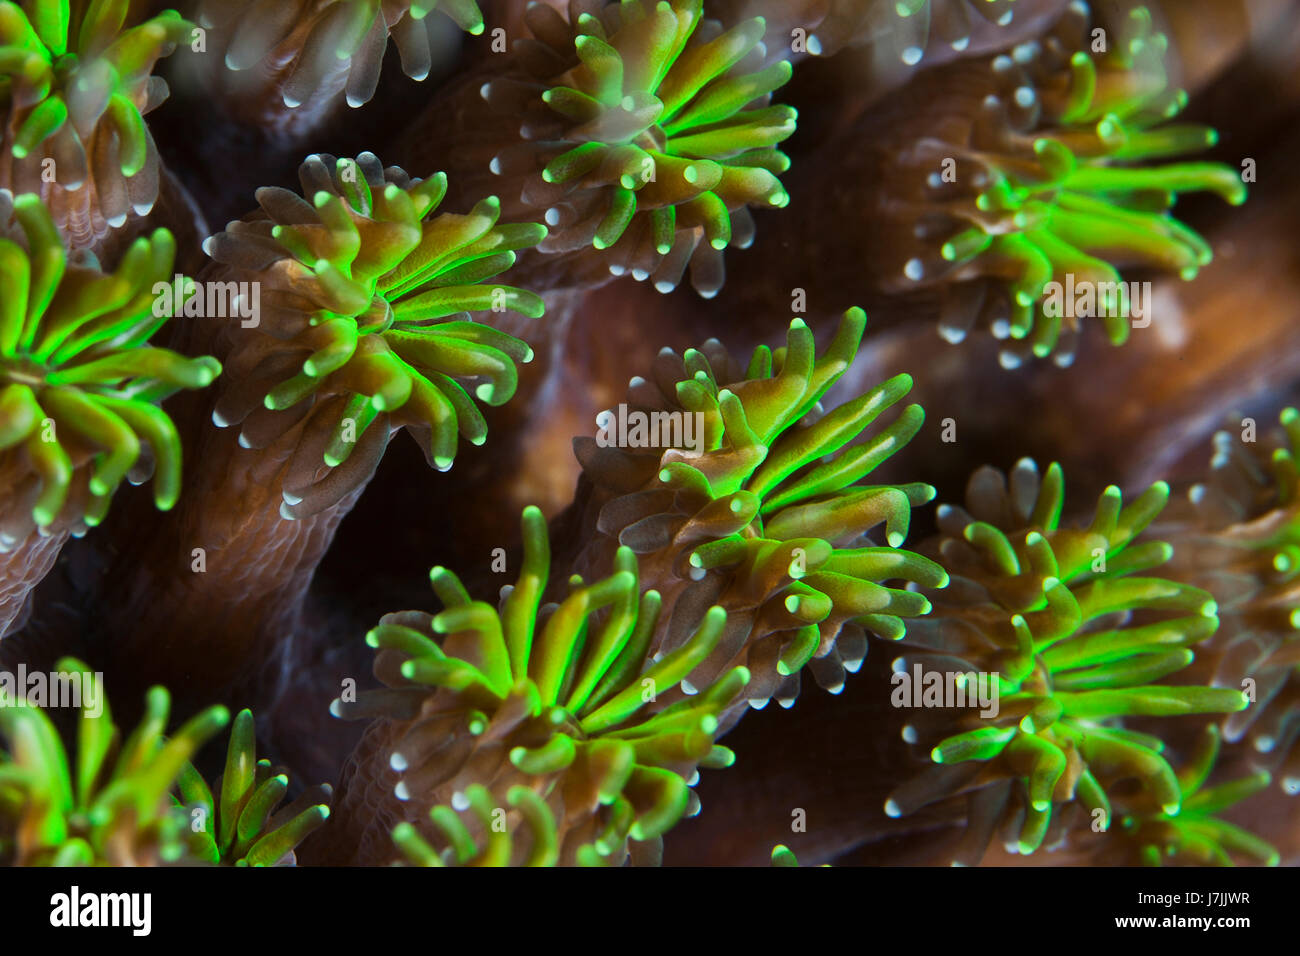 Chiudere l immagine di polipi fluorescente della star di coralli duri. Komodo, Indonesia. Foto Stock